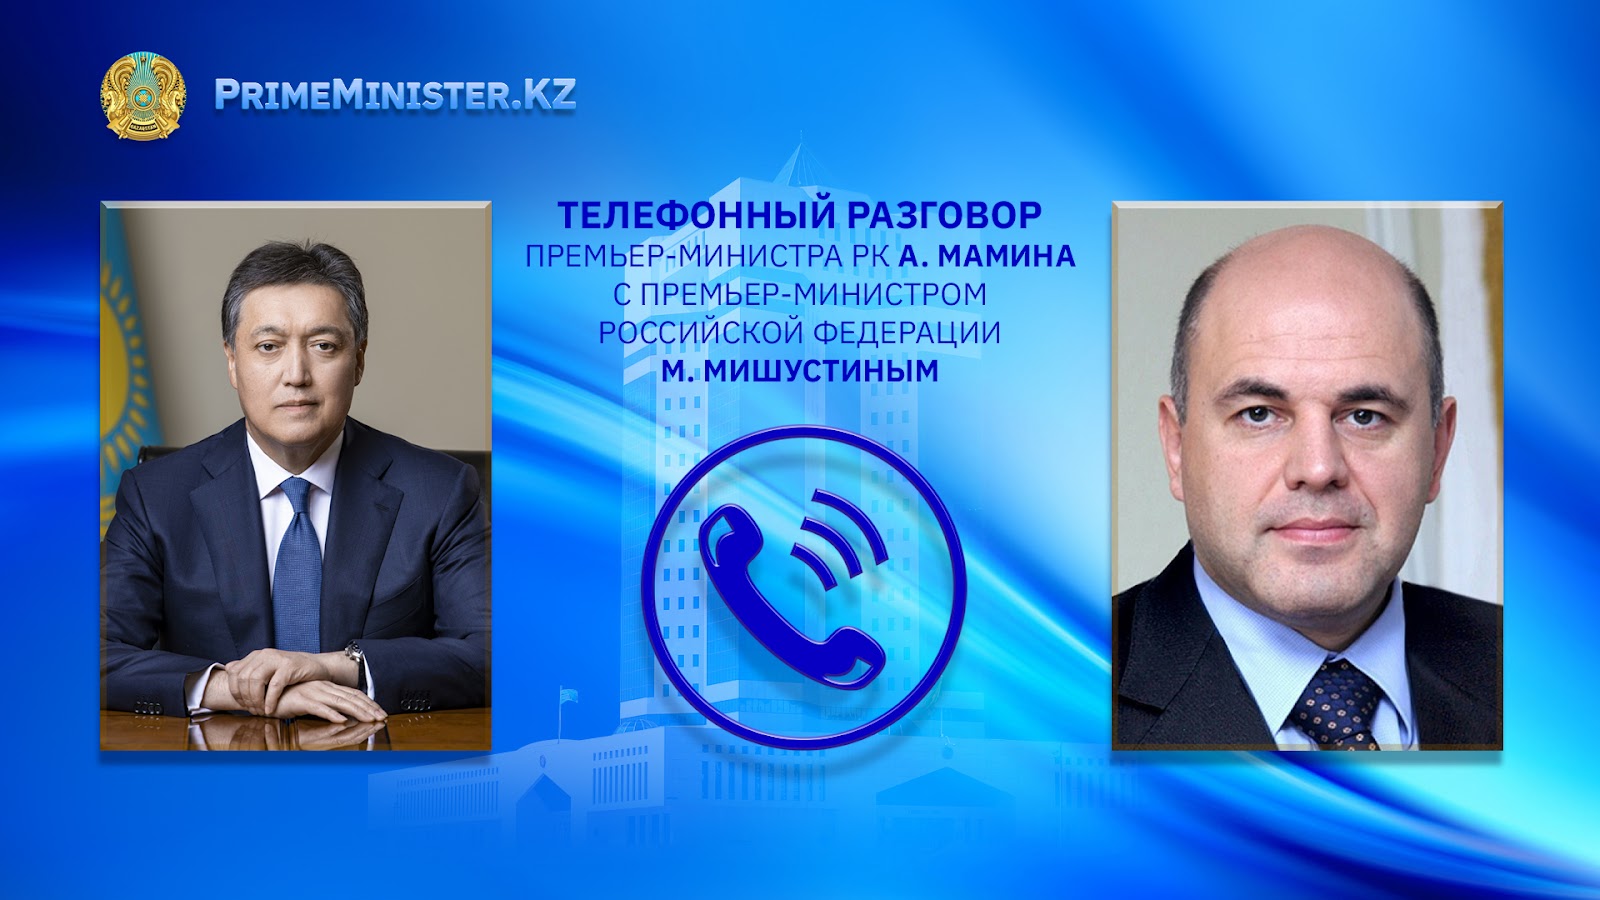 Премьер-Министр РК А.Мамин провел телефонный разговор с Председателем Правительства РФ М.Мишустиным